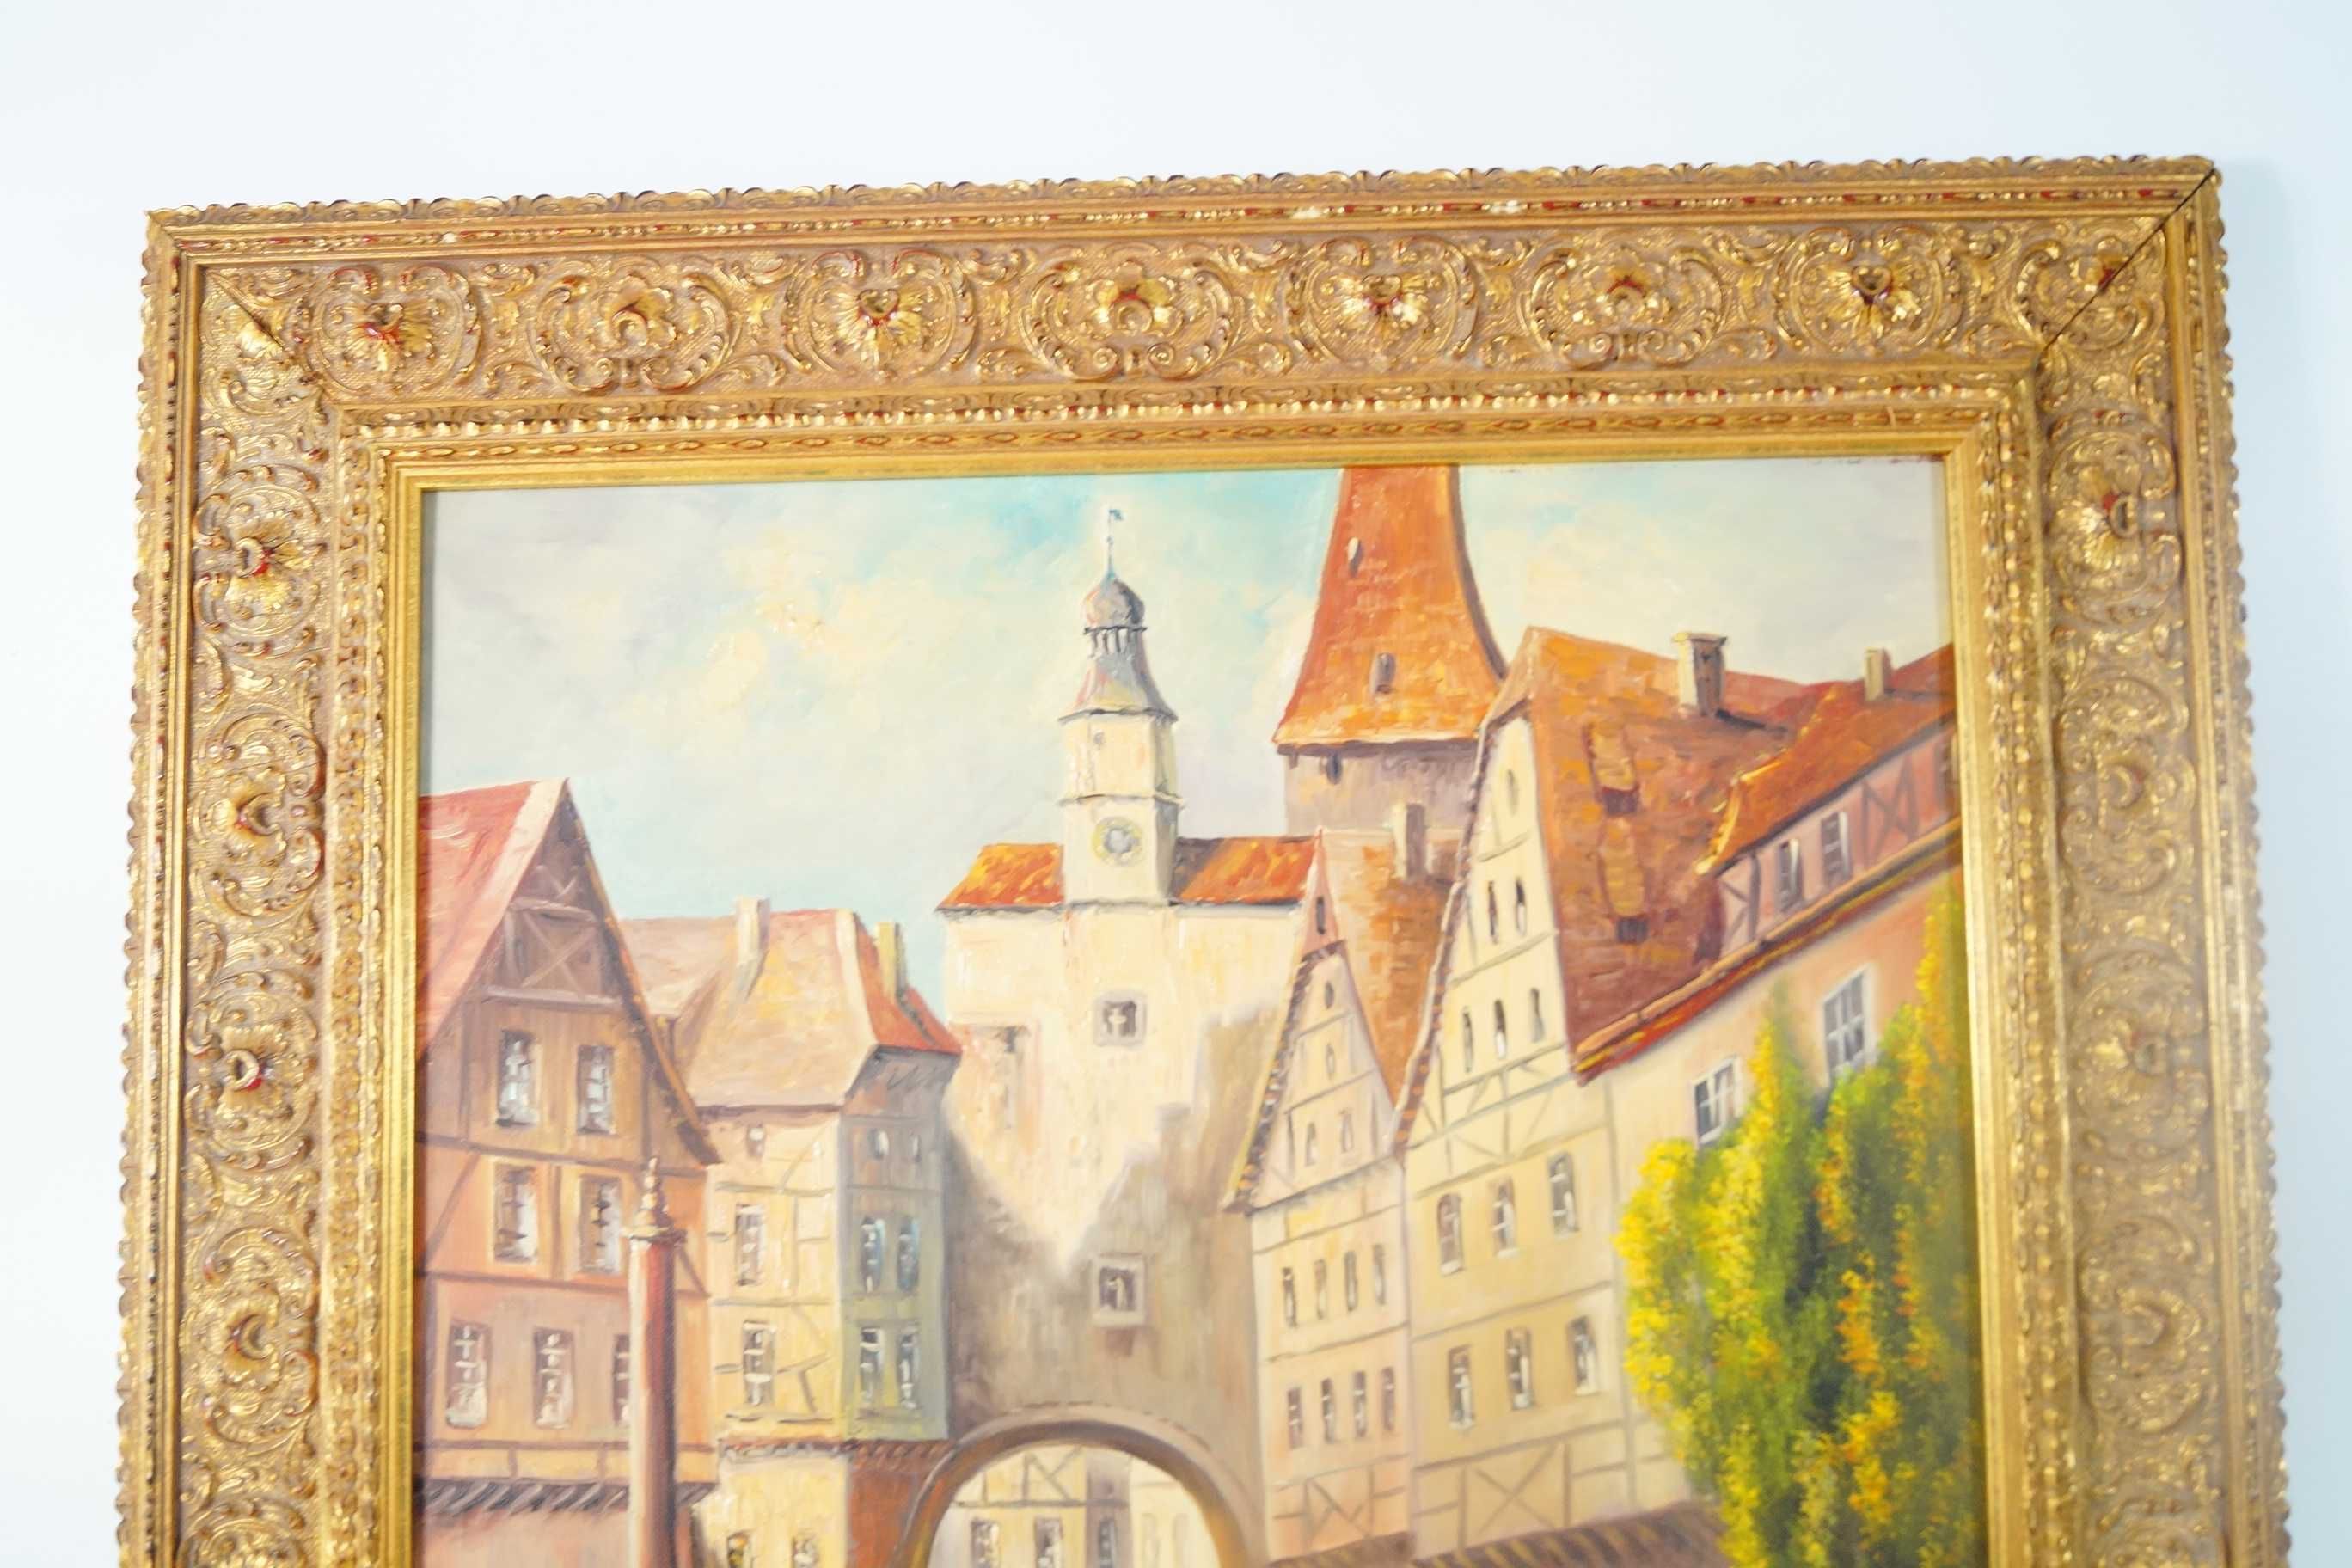 Uliczka w Rothenburgu piękny obraz malowany na płótnie